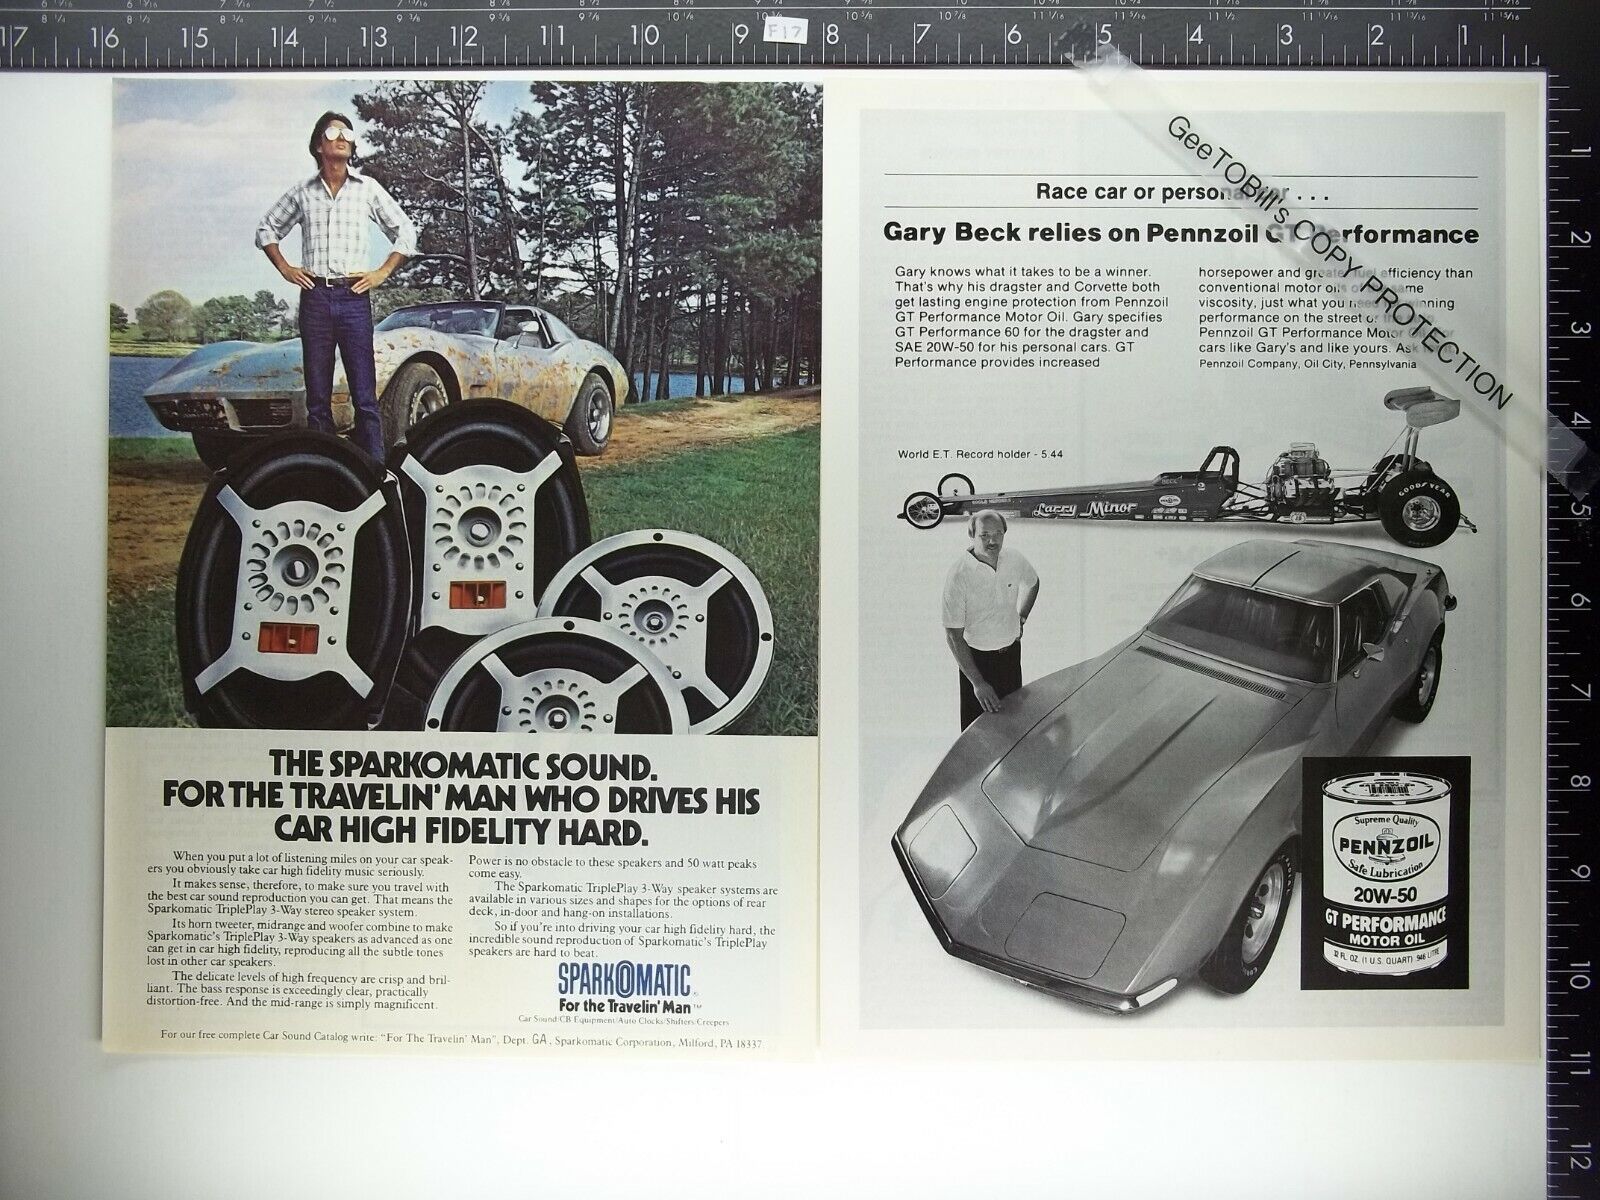 2AD 1978 Sparkomatic 6x9 speaker & Pennzoil GT performance oil Corvette 73 74 77